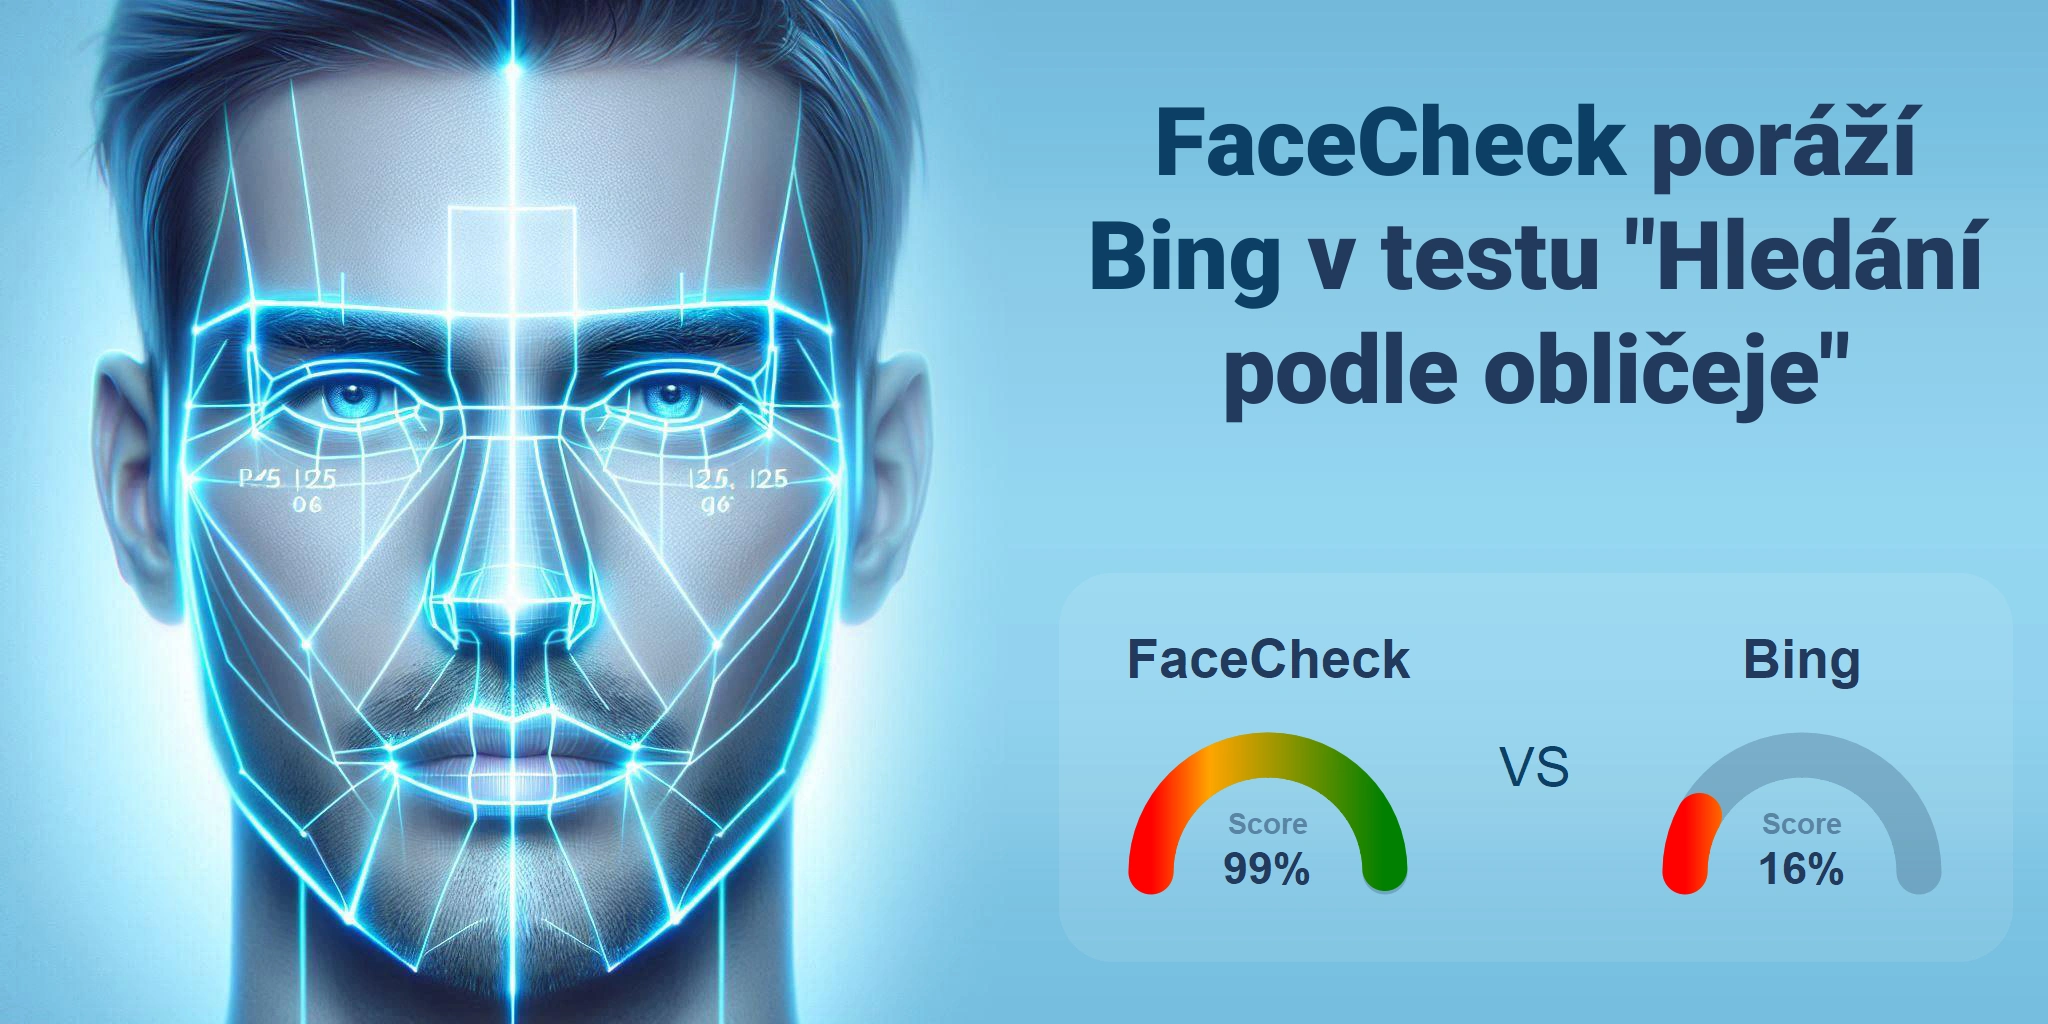 Který je lepší pro vyhledávání obličejů: <br>FaceCheck nebo Bing?